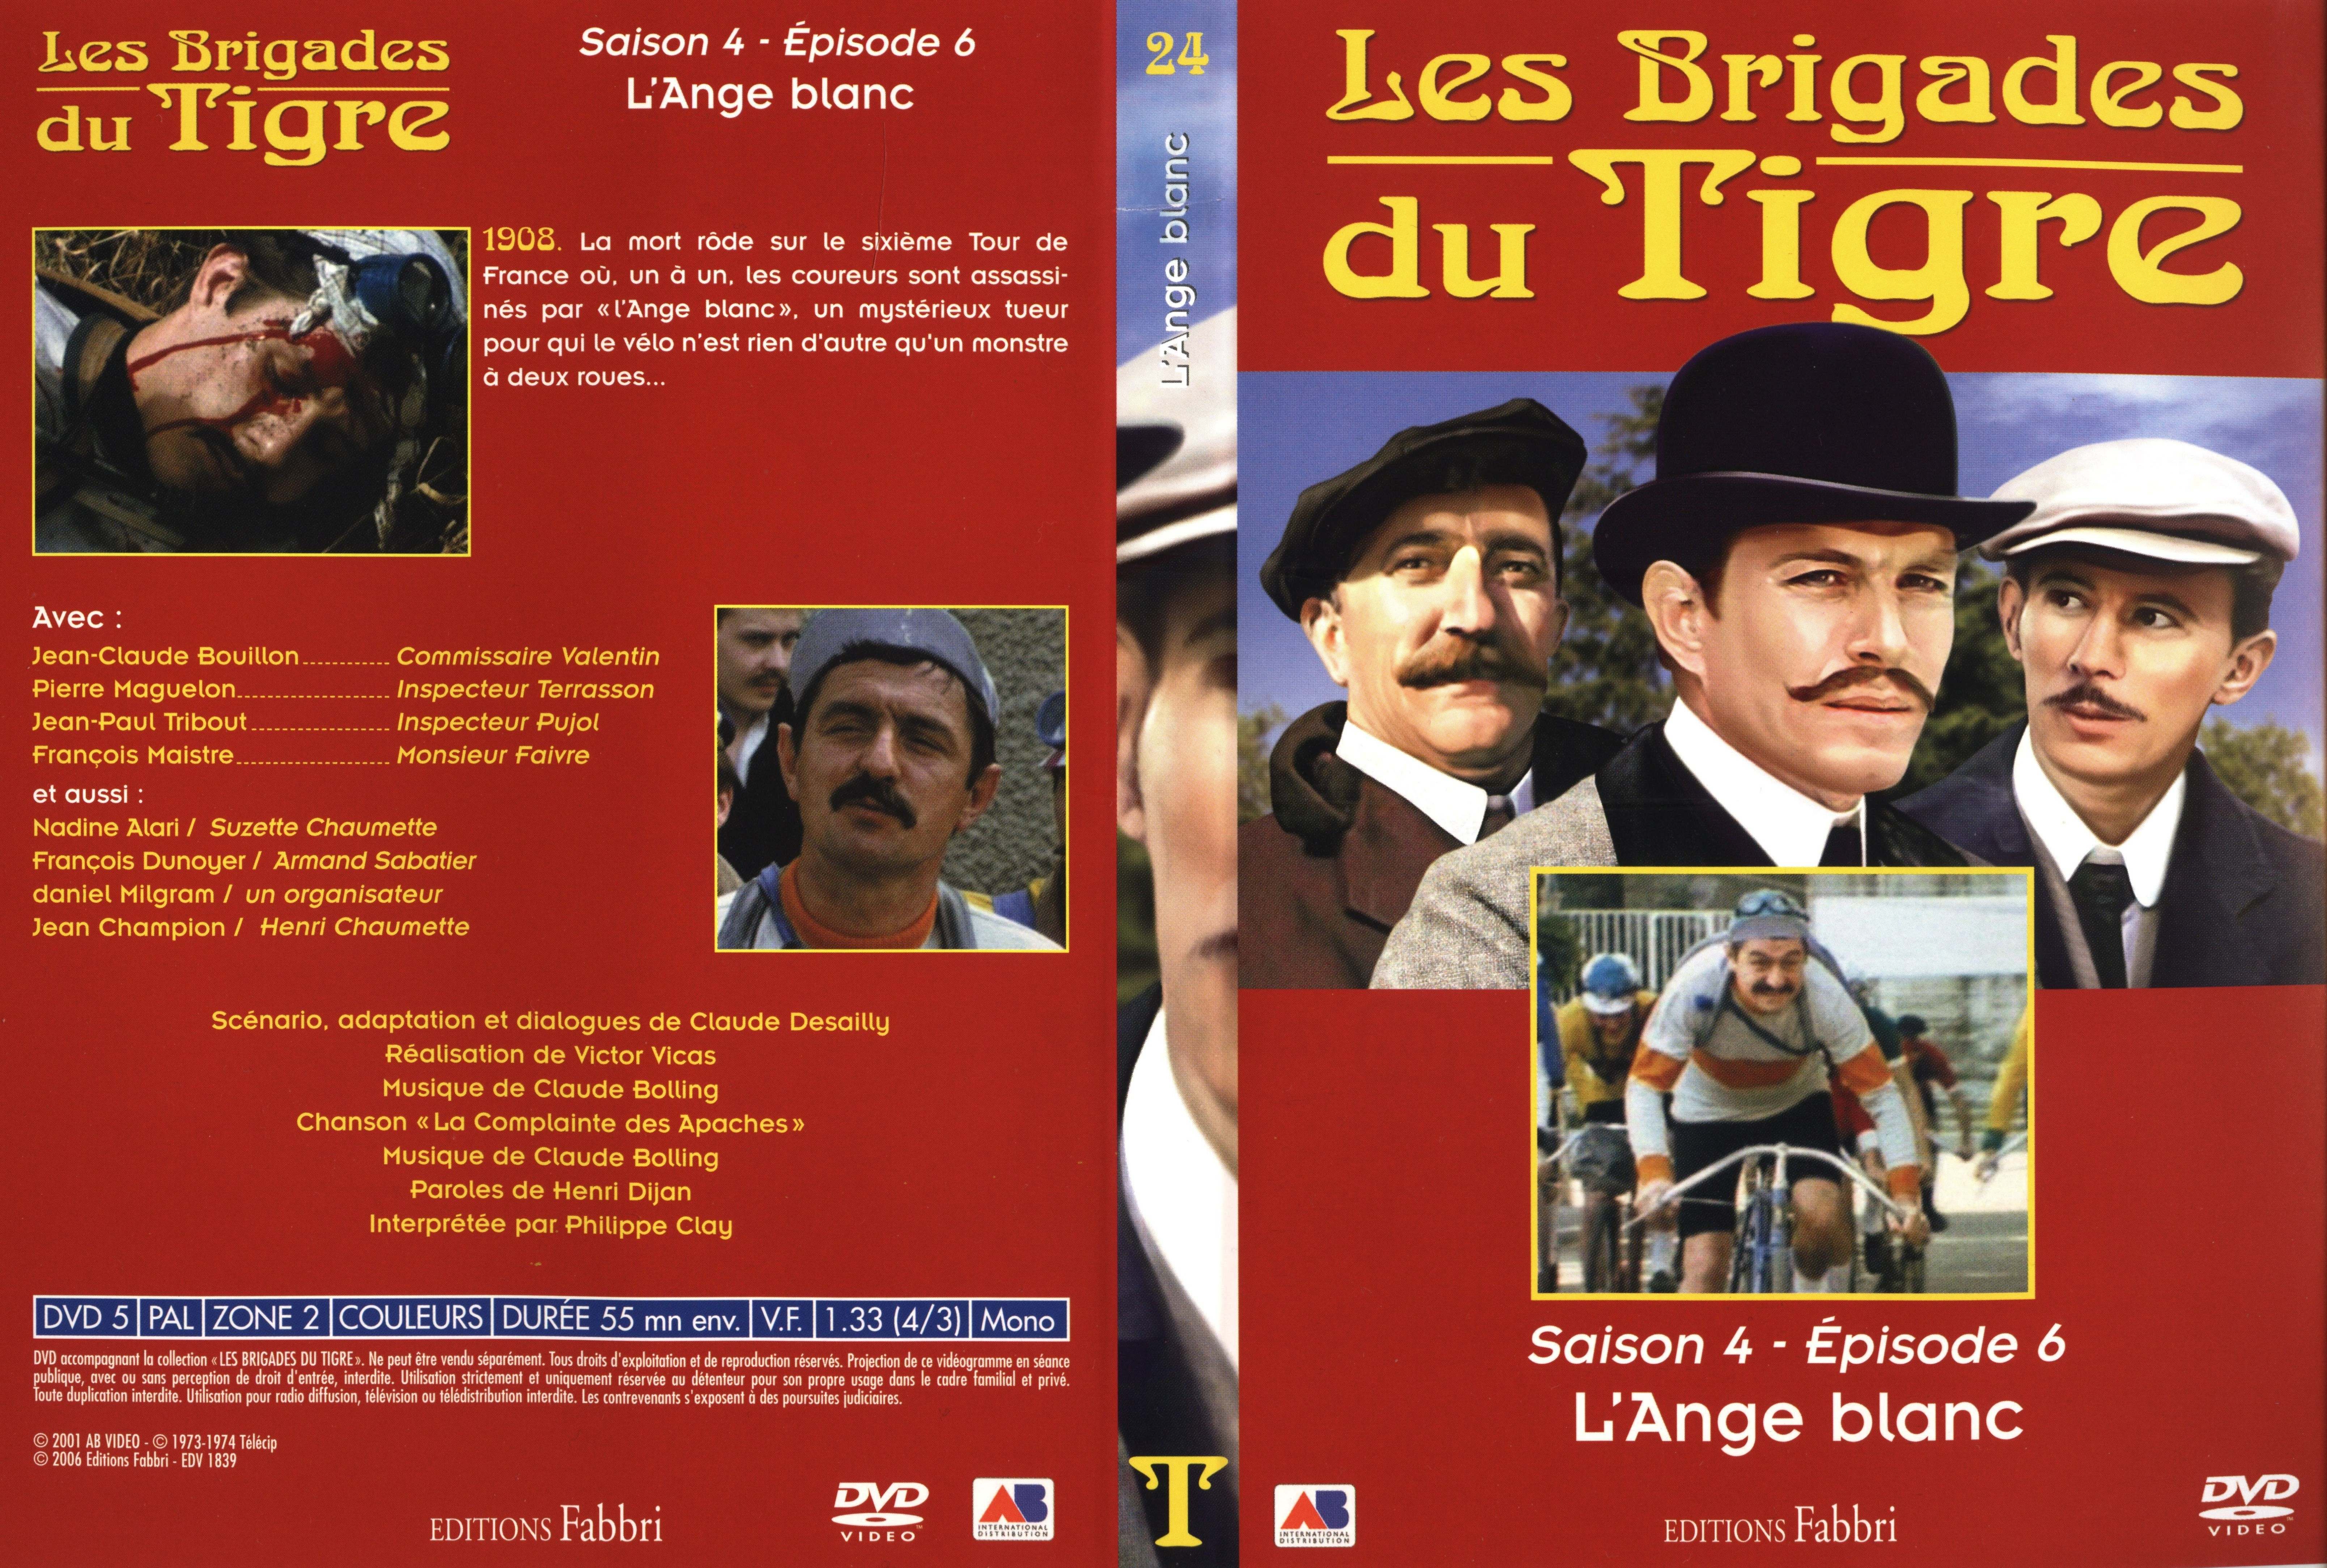 Jaquette DVD Les brigades du tigre saison 4 pisode 6